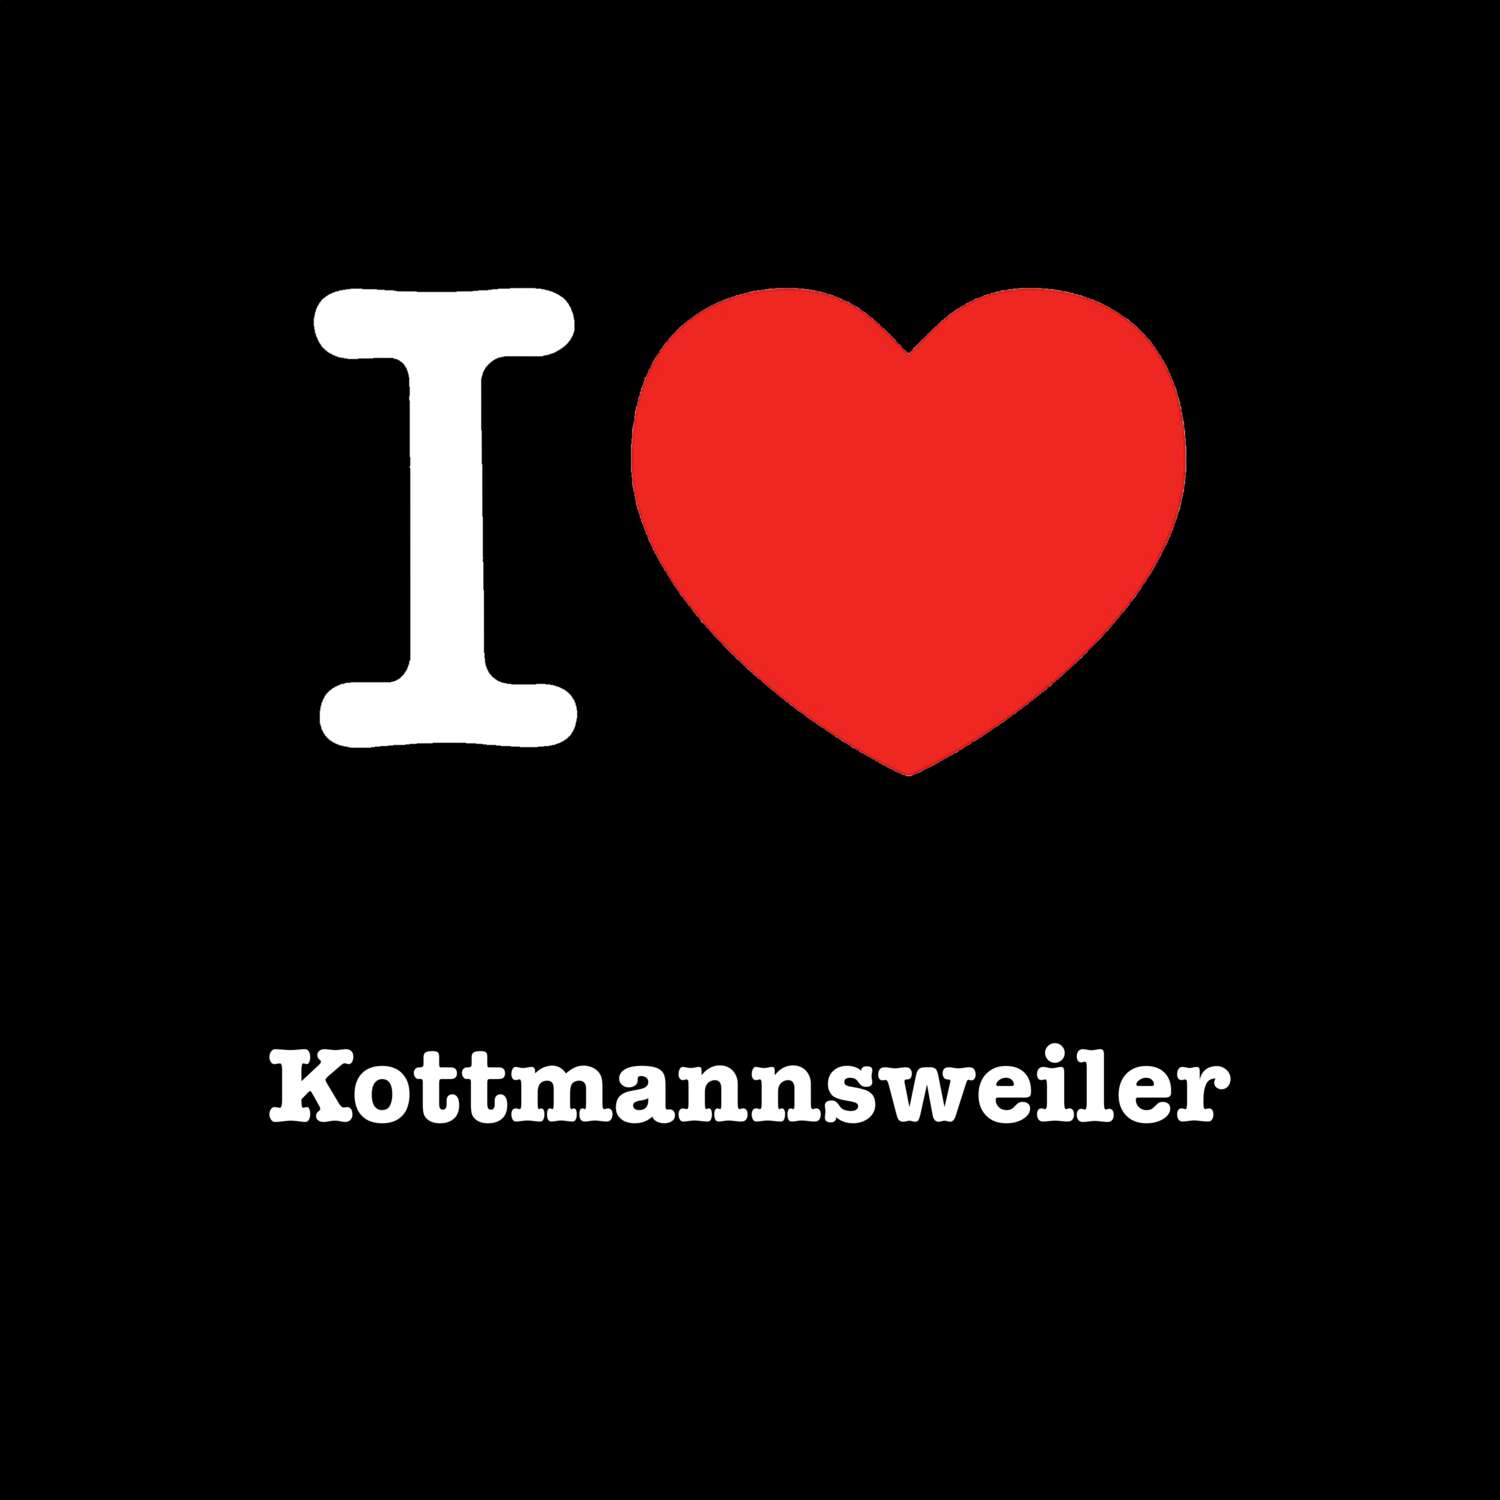 Kottmannsweiler T-Shirt »I love«